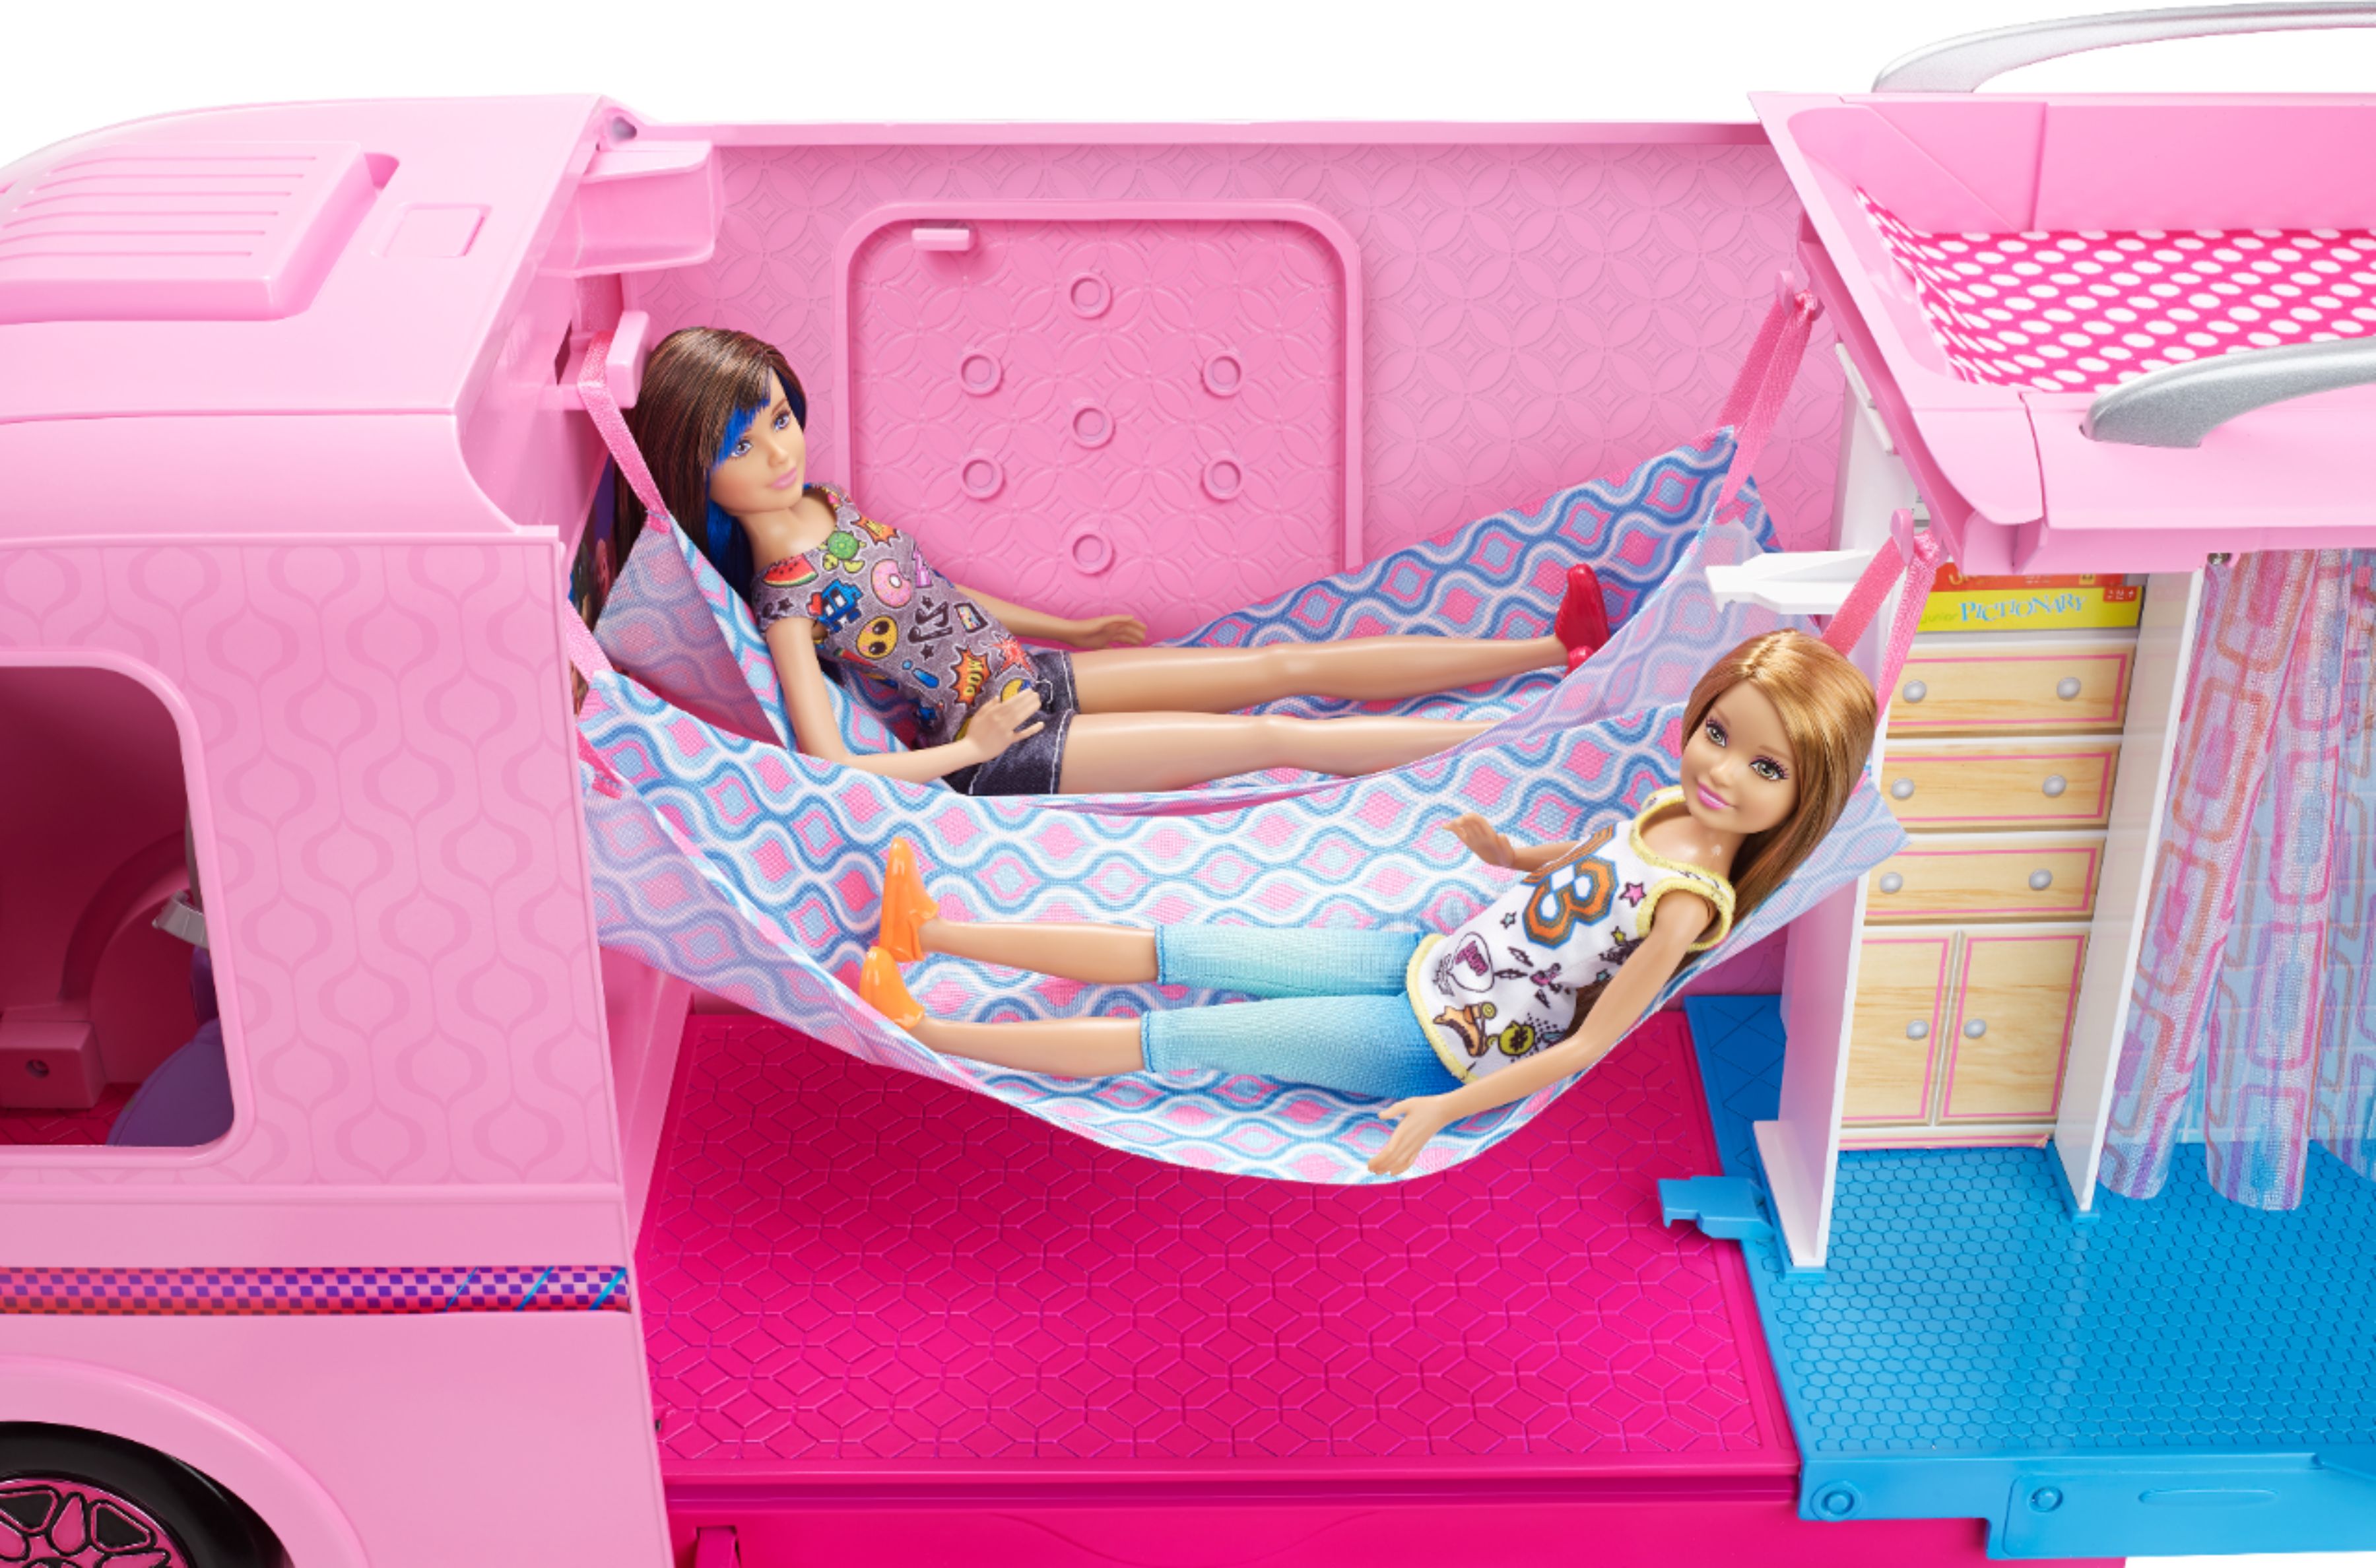 best price for barbie dream camper